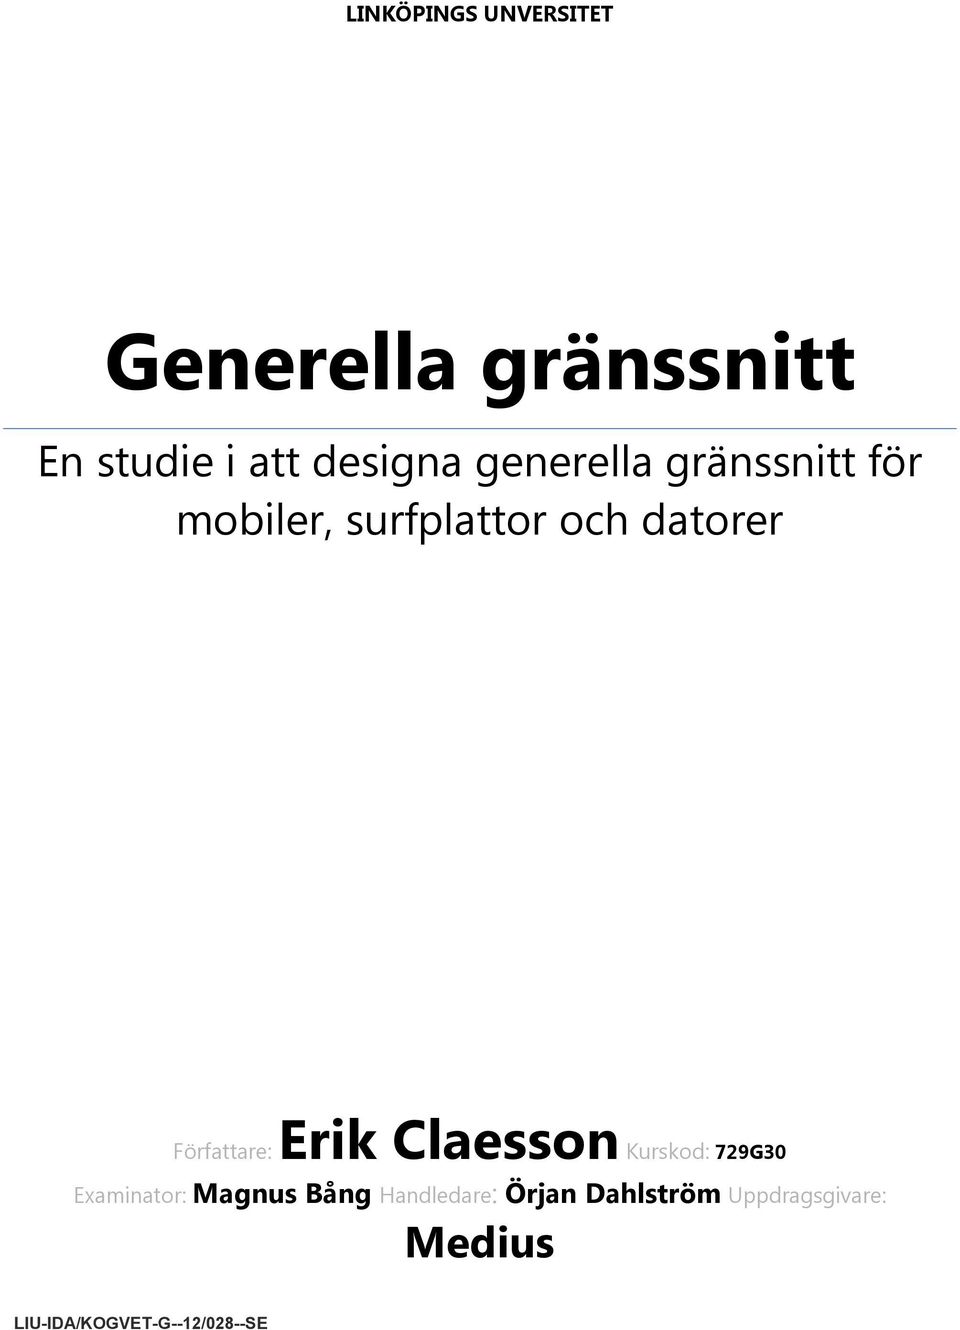 Författare: Erik Claesson Kurskod: 729G30 Examinator: Magnus Bång